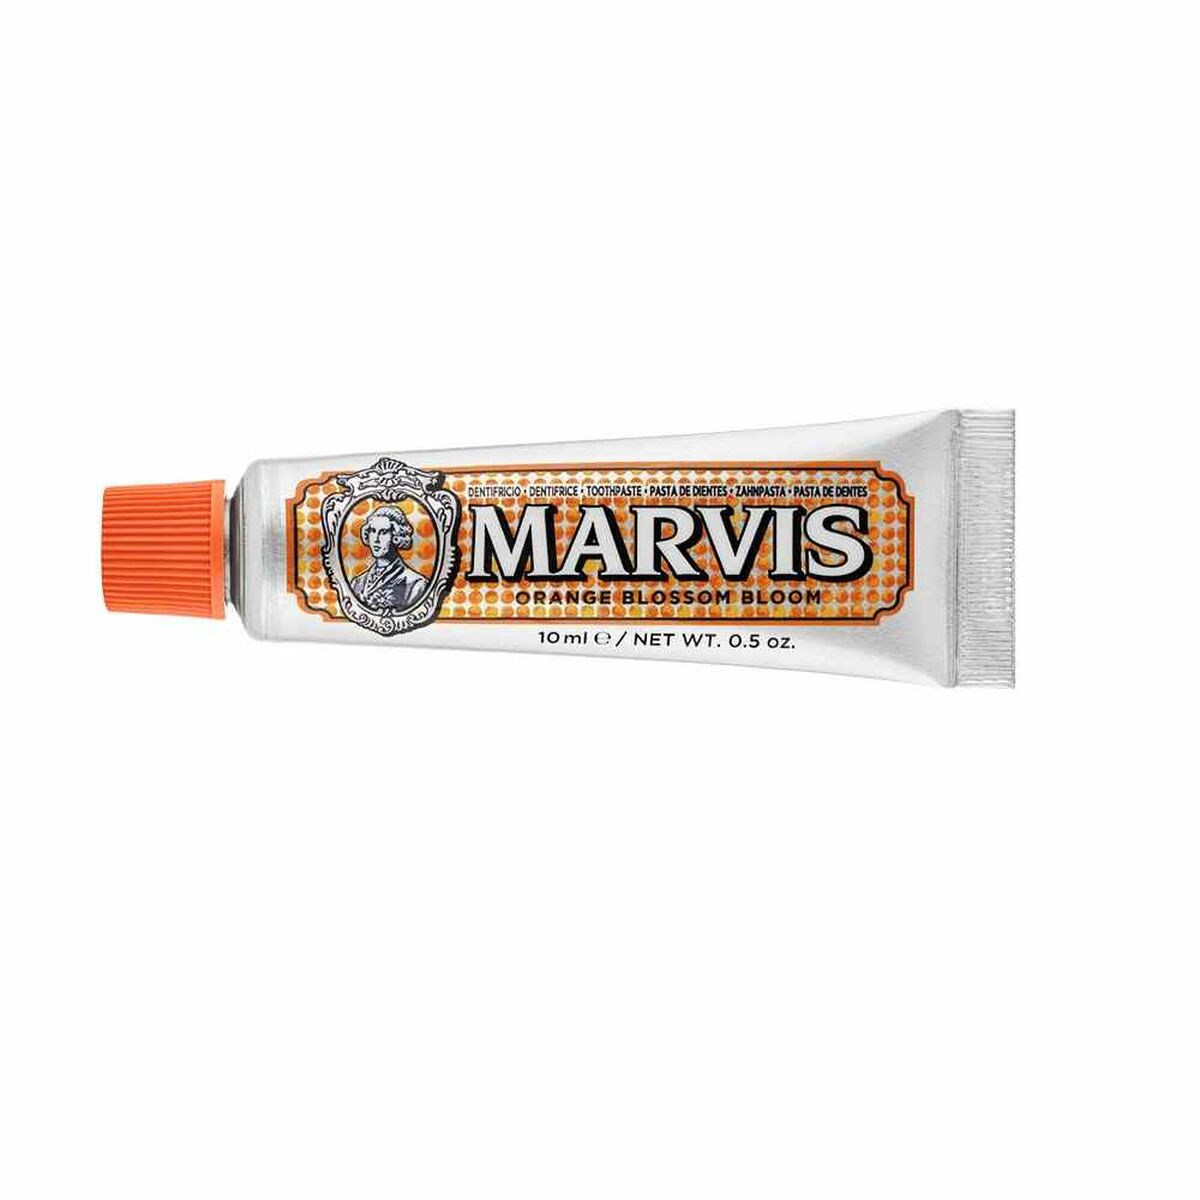 Toothpaste Marvis Orange Blossom Bloom 10 ml